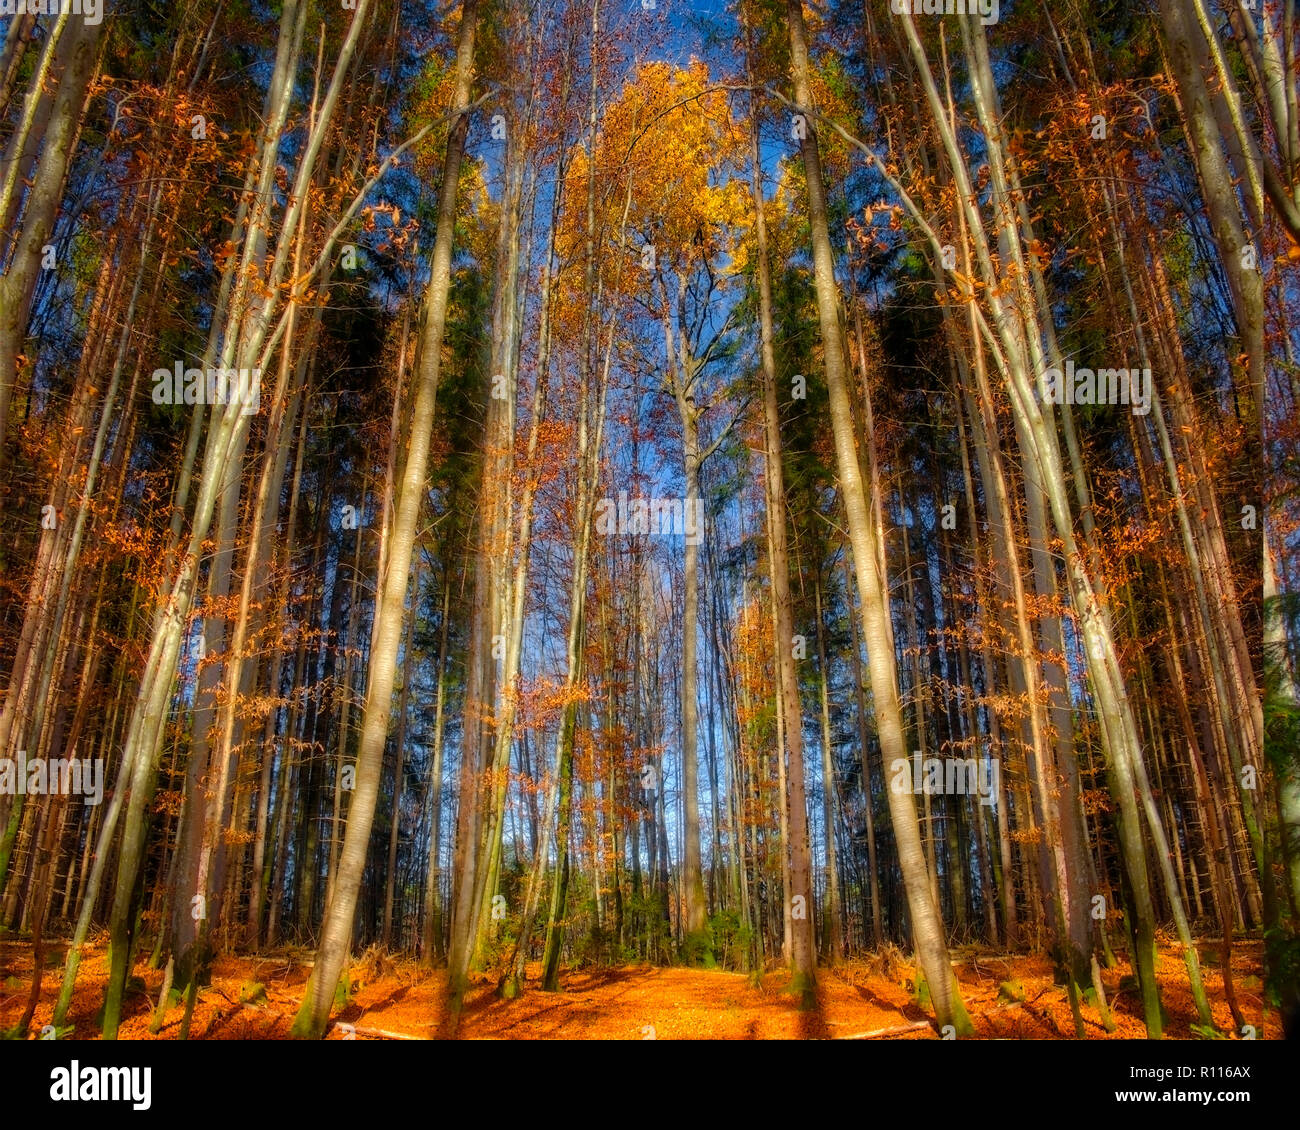 CONCEPT : LA NATURE de la forêt d'automne scene (image HDR) Banque D'Images